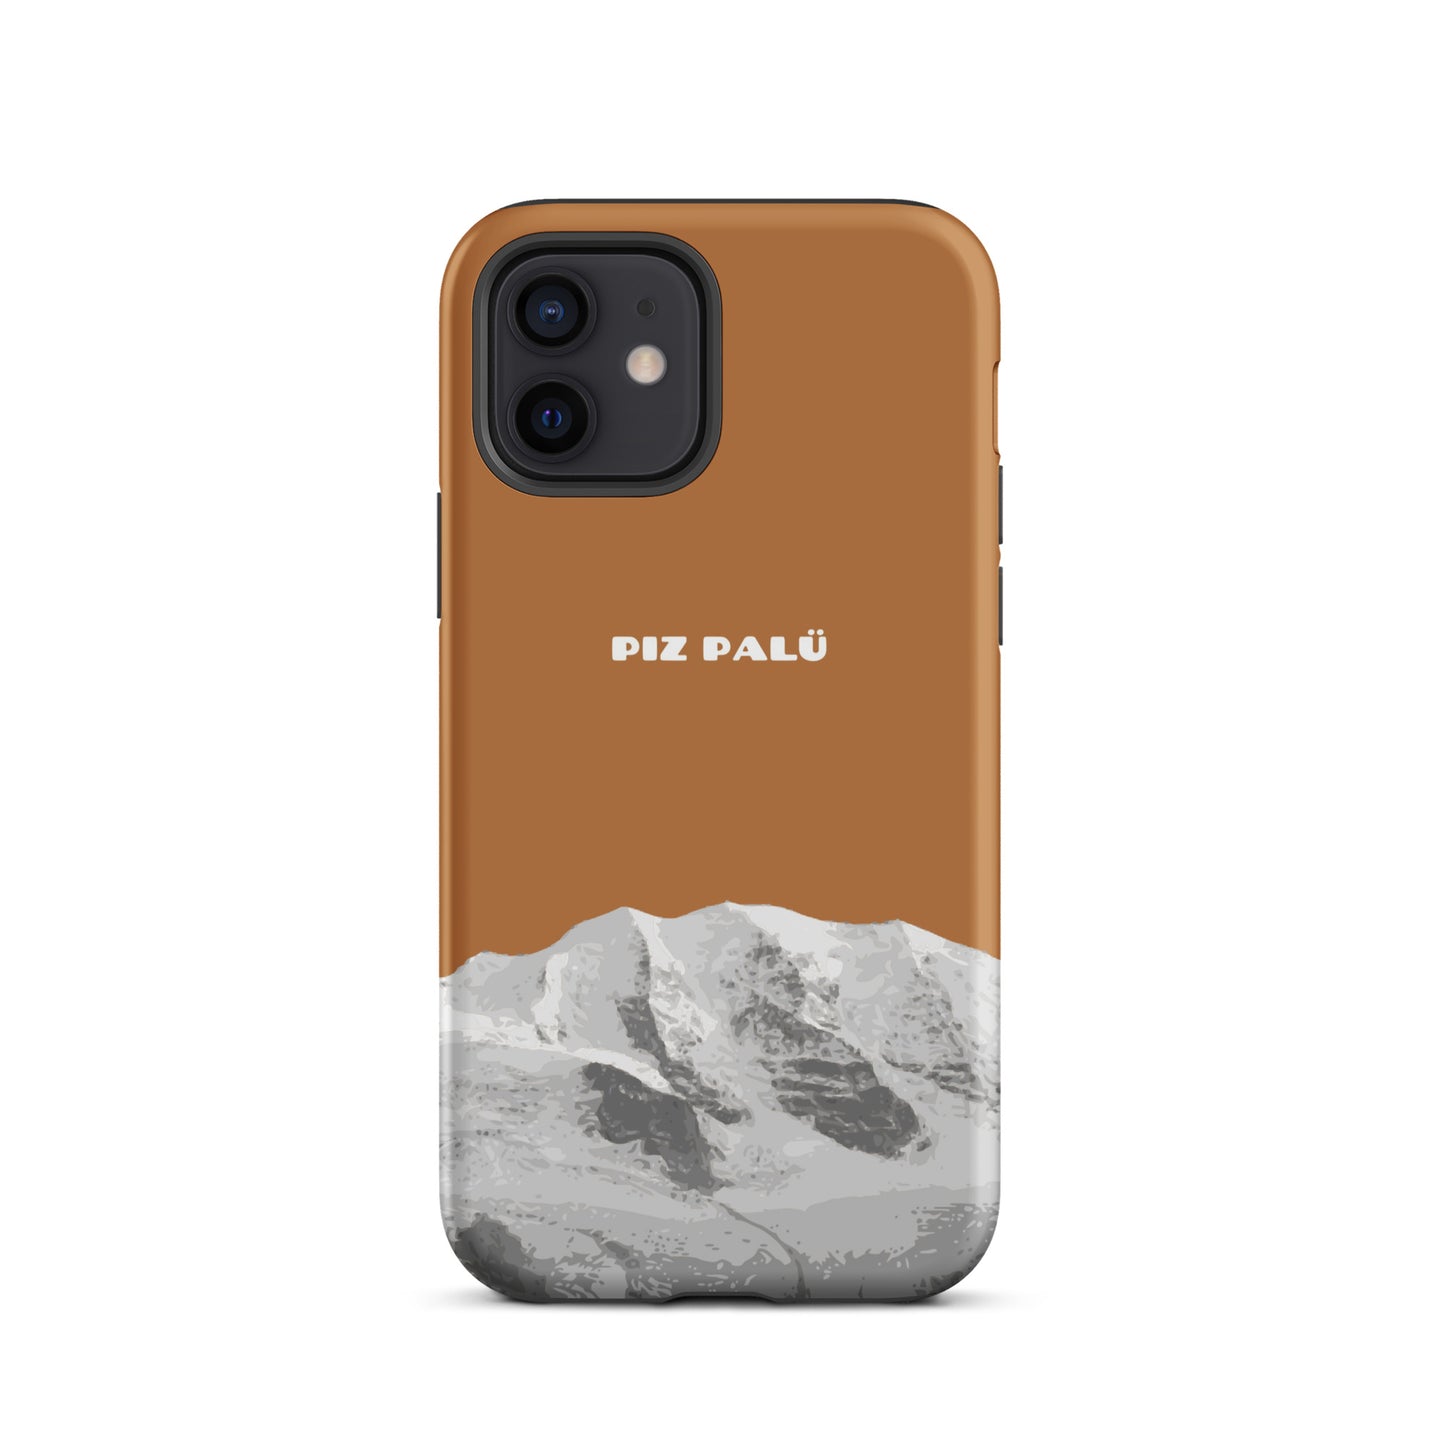 Hülle für das iPhone 12 von Apple in der Farbe Kupfer, dass den Piz Palü in Graubünden zeigt.